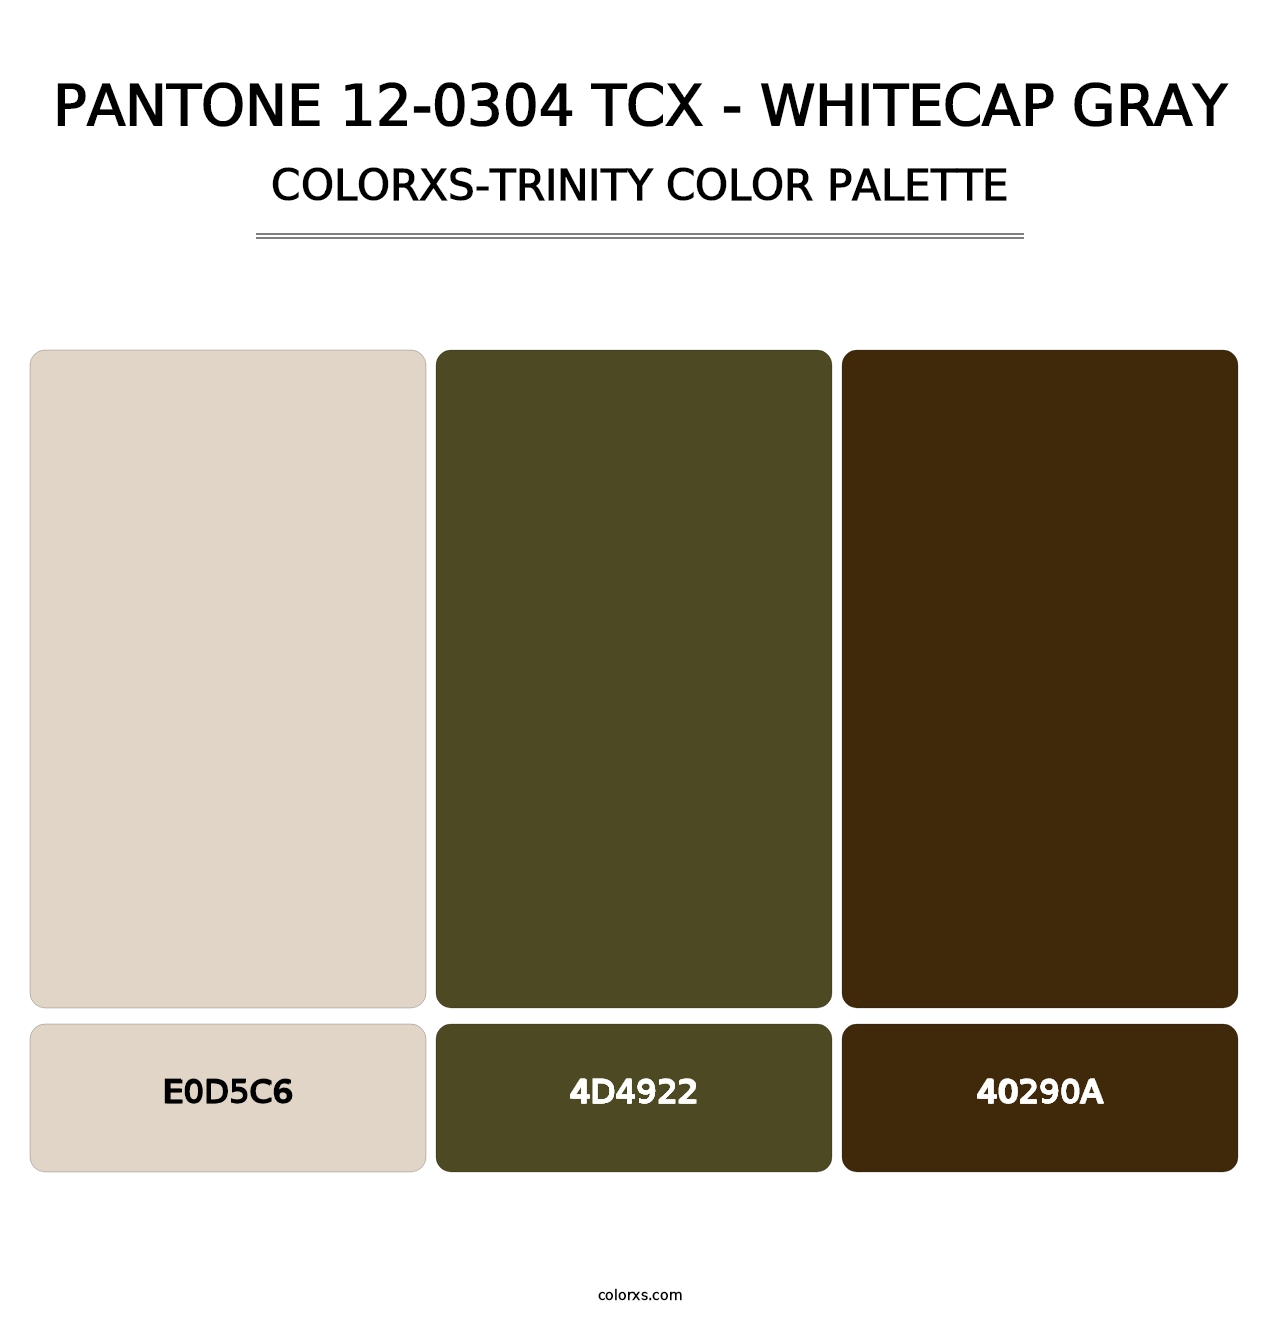 PANTONE 12-0304 TCX - Whitecap Gray - Colorxs Trinity Palette